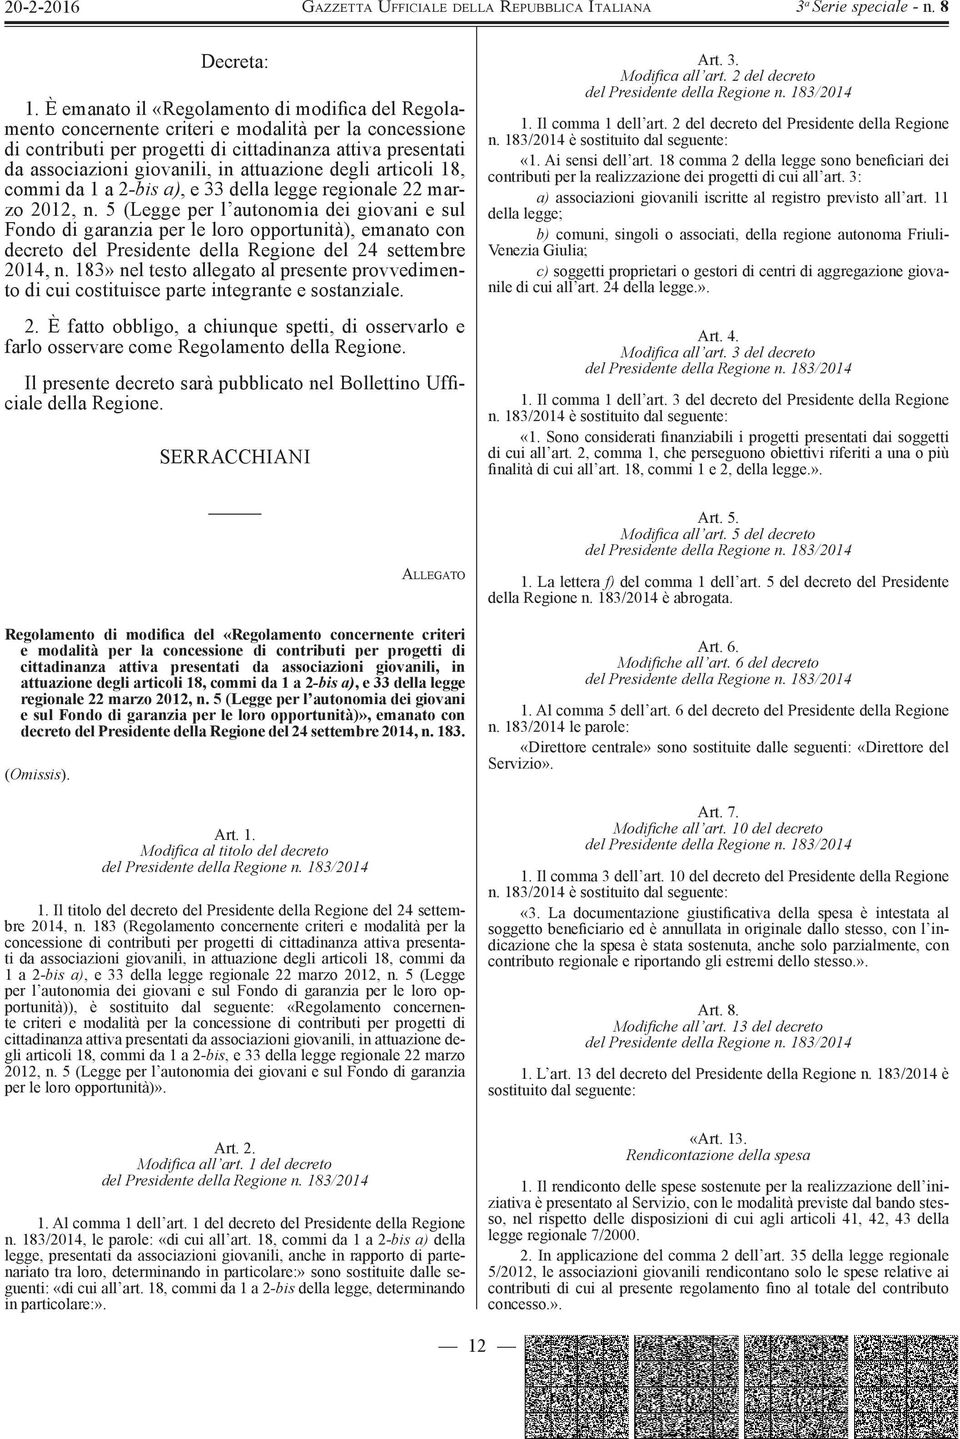 attuazione degli articoli 18, commi da 1 a 2 -bis a), e 33 della legge regionale 22 marzo 2012, n.